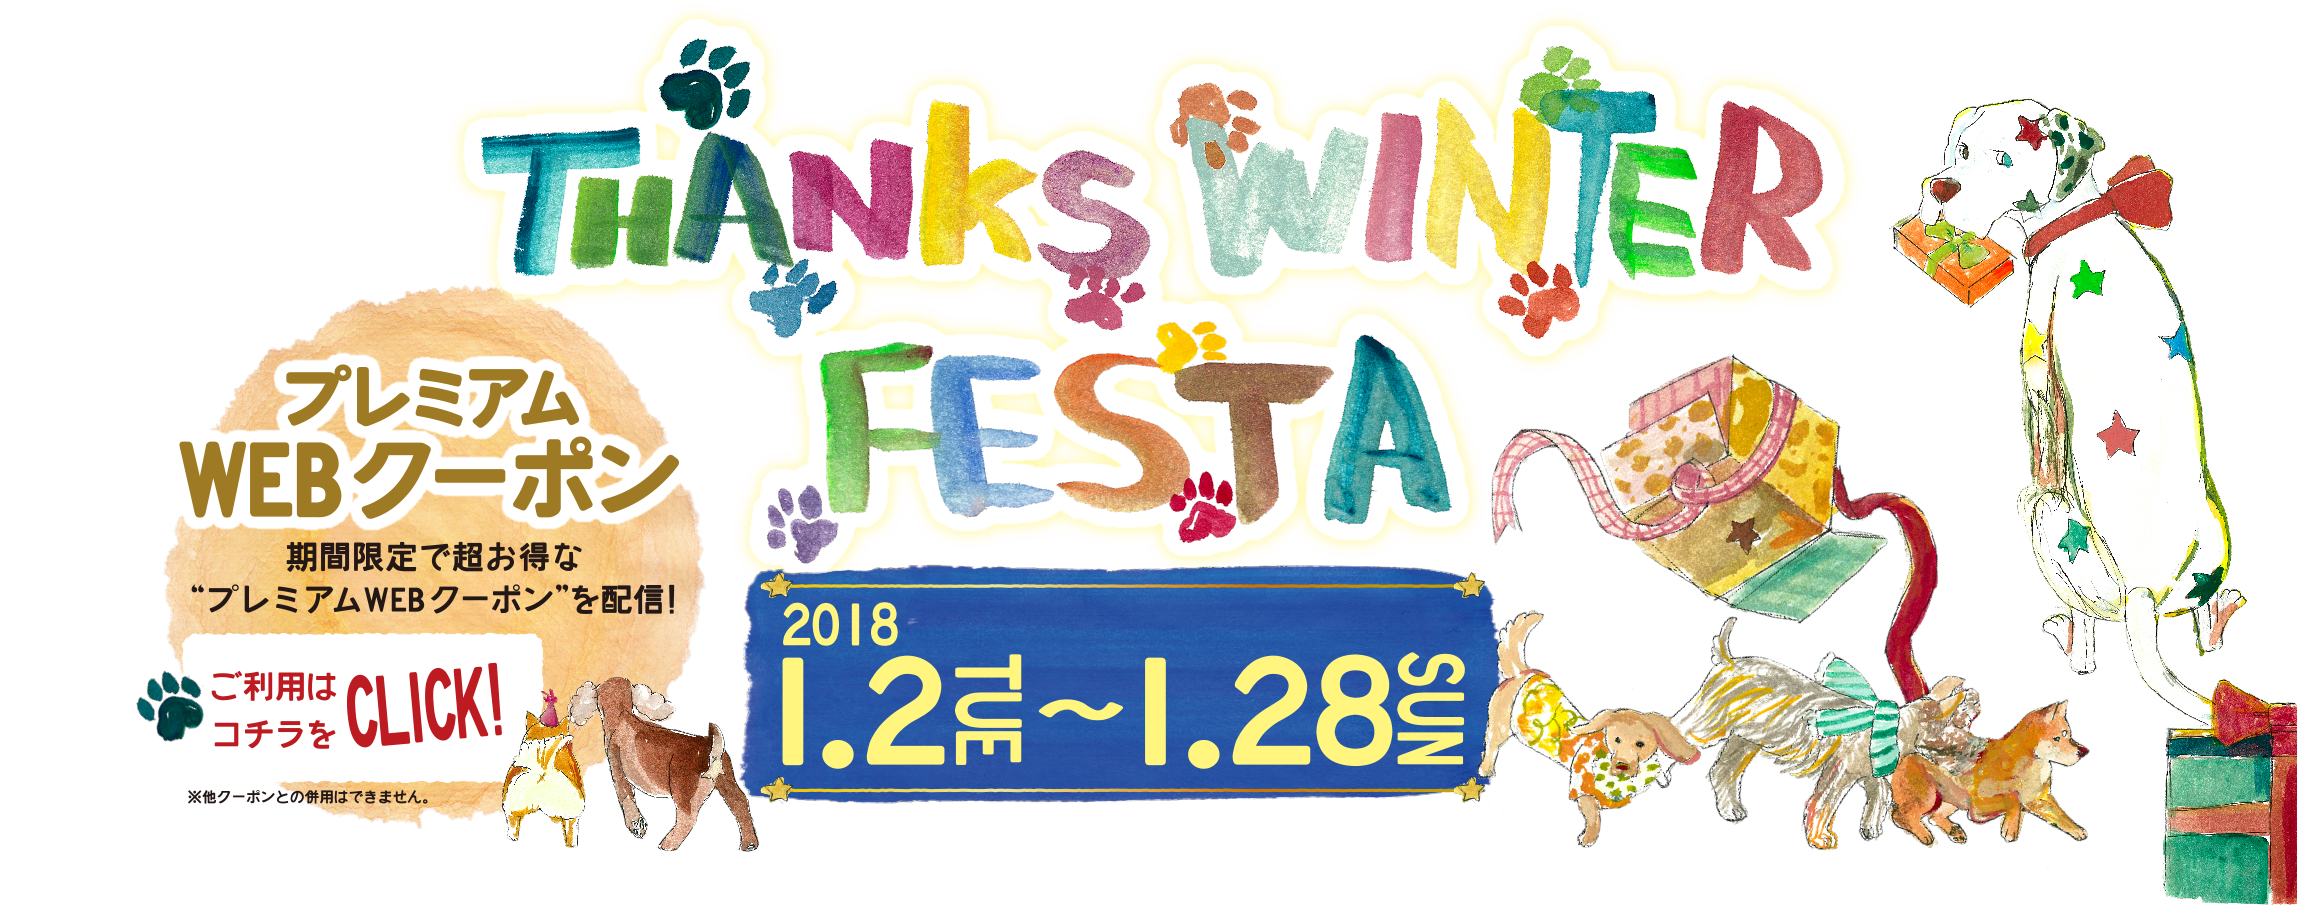 covlrna machida THANKS WINTER FESTA FESTA 2018 1/2(TUE)-1/28(SUN) プレミアムWEBクーポン